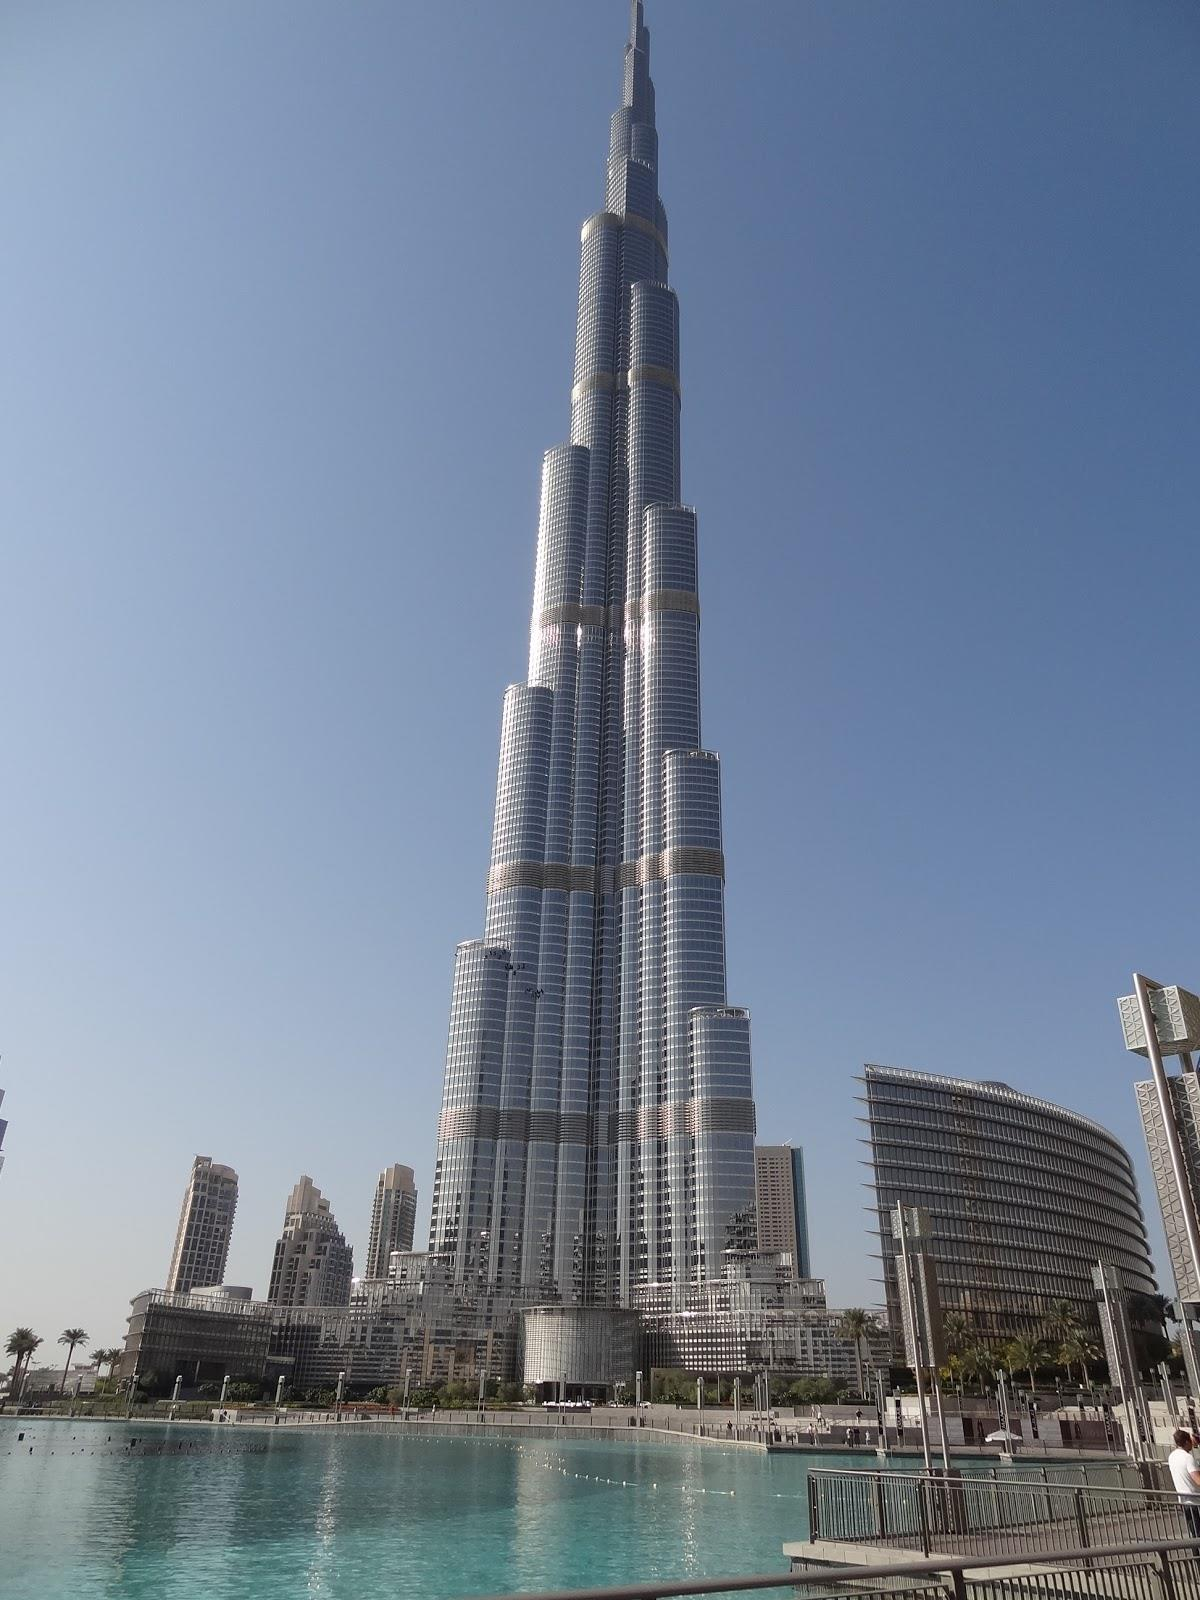 ΜΠΟΥΡΤΖ ΧΑΛΙΦΑ Το Μπουρτζ Χαλίφα, γνωστό και ως Μπουρτζ Ντουμπάι, είναι ουρανοξύστης στο Ντουμπάι των Ηνωμένων Αραβικών Εμιράτων και το πιο ψηλό κτήριο στον κόσμο, με ύψος 828 μέτρα.